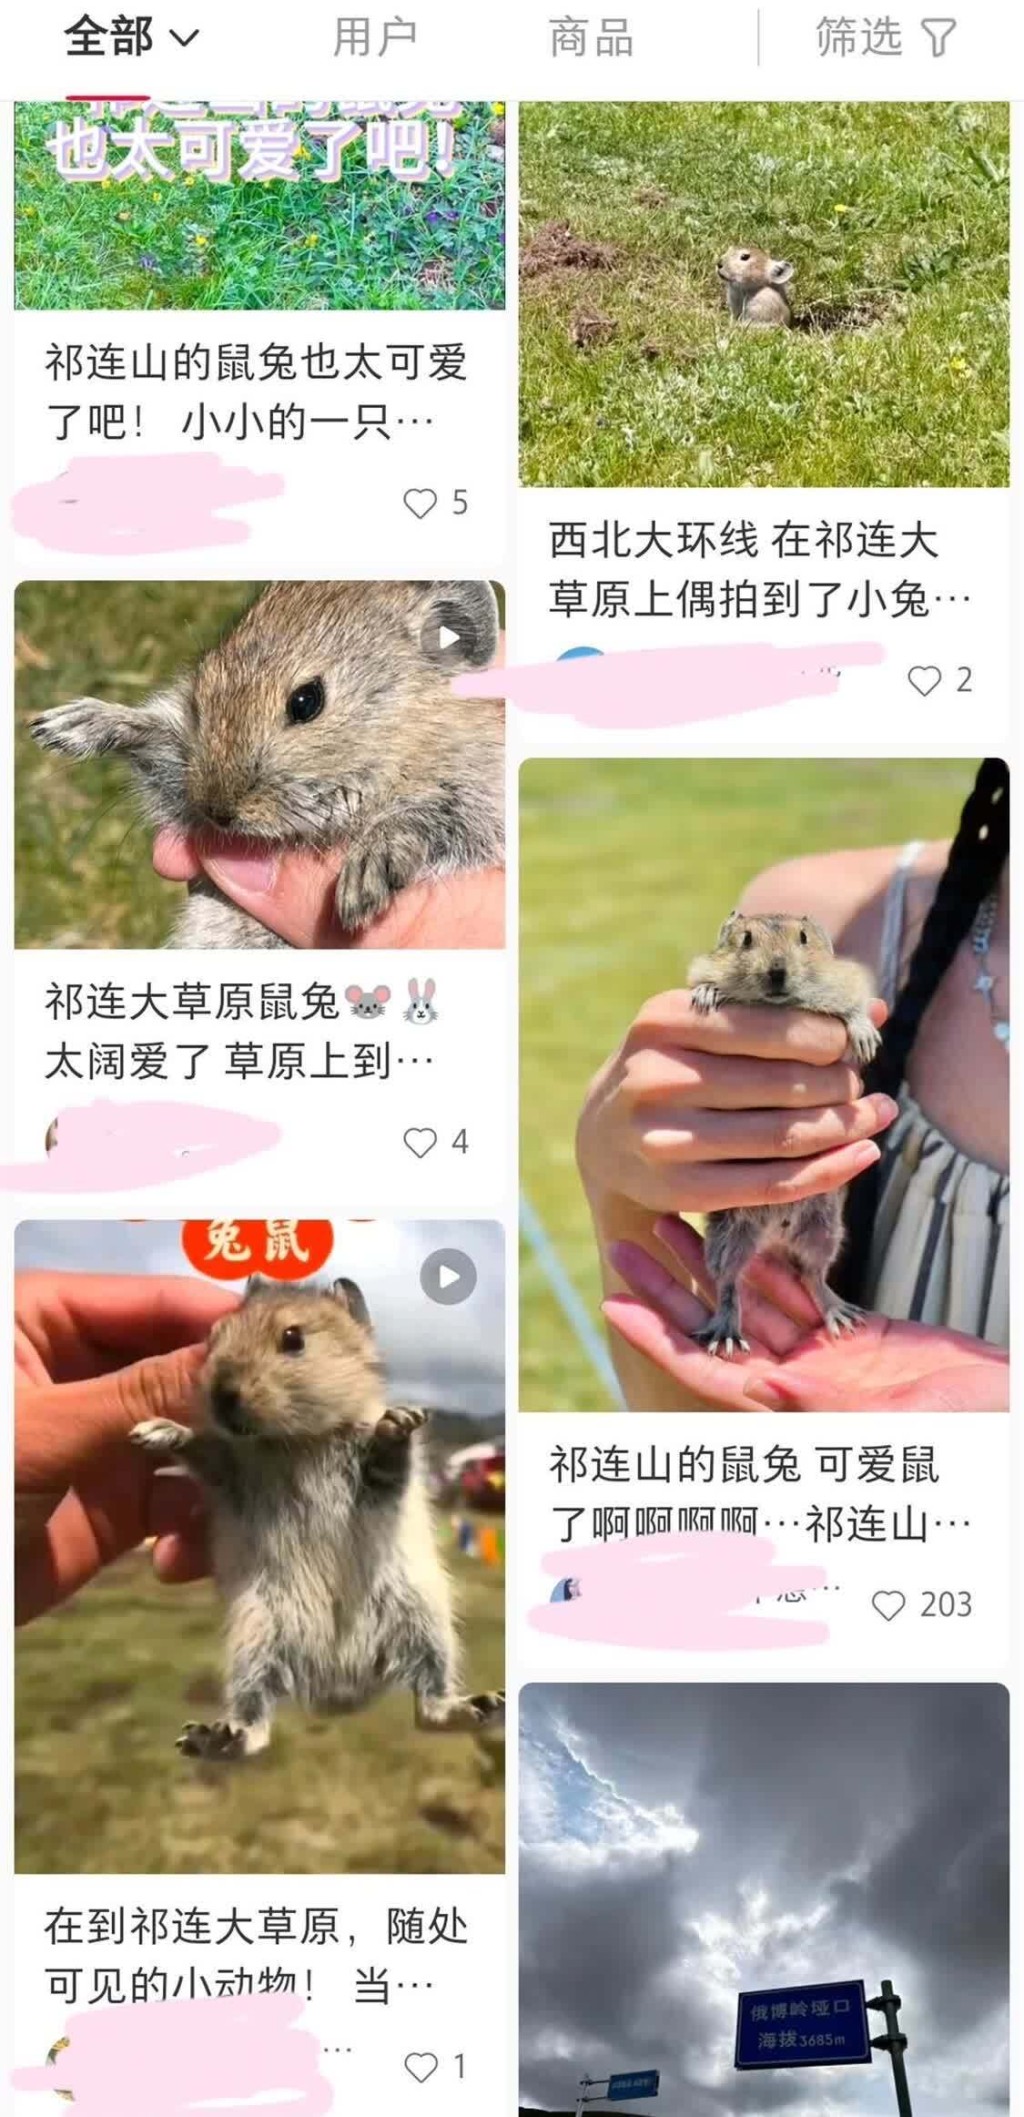 游客在社交平台晒出手持高原鼠兔的图片。